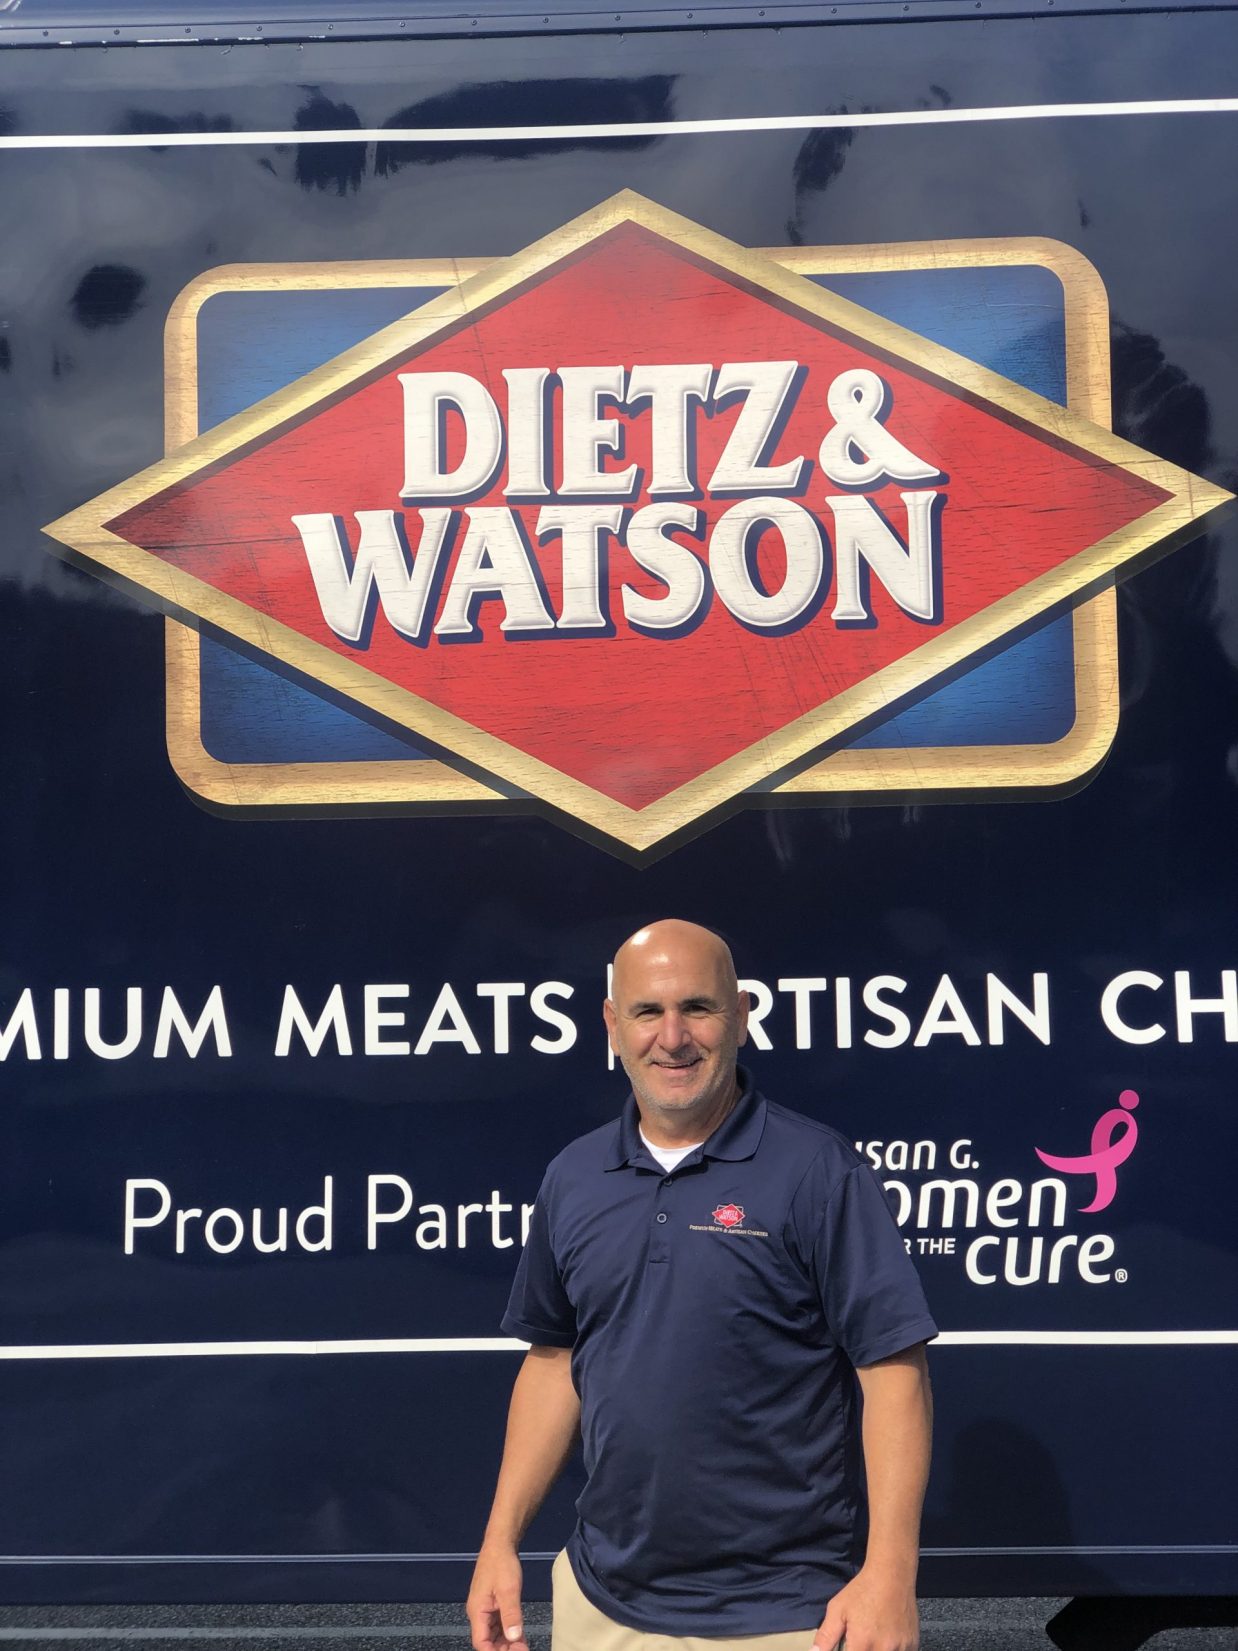 Meet Kevin from Dietz & Watson